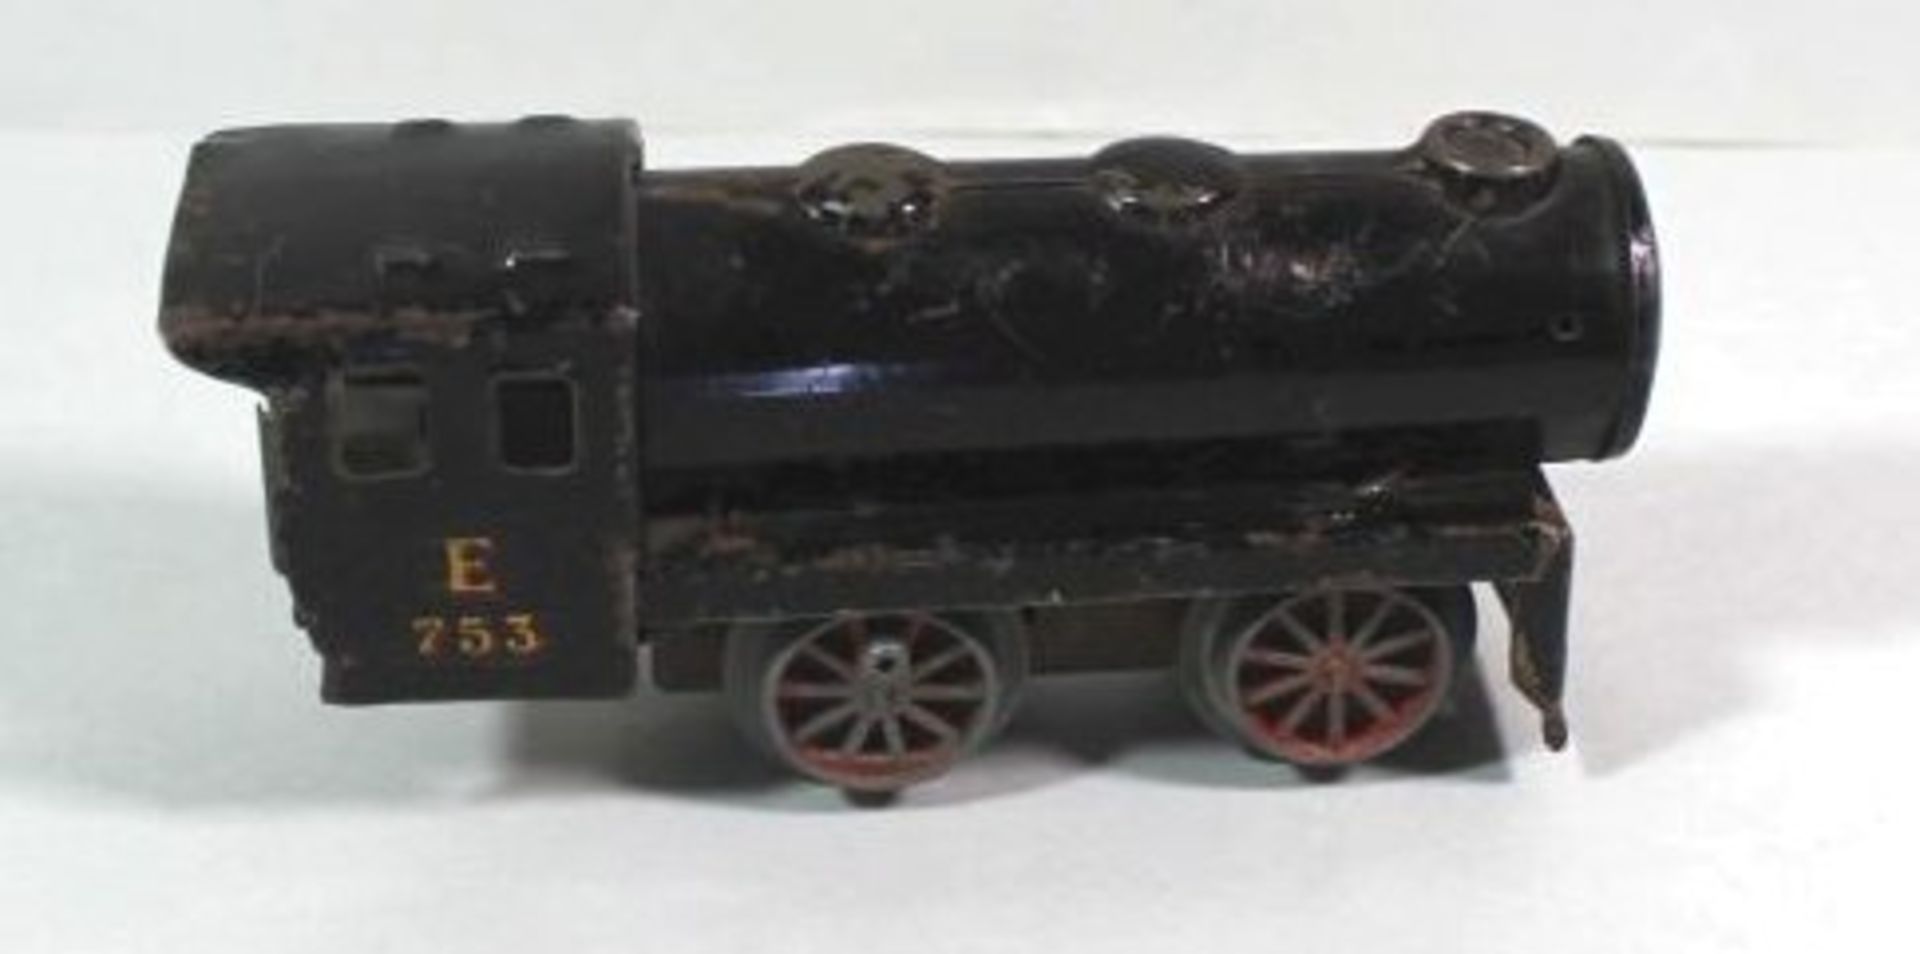 Uhrwerk-Lokomotive, Spur 0, älter, Werk läuft, Alters-u. Gebrauchsspuren, H-7cm L-15cm - Bild 2 aus 4